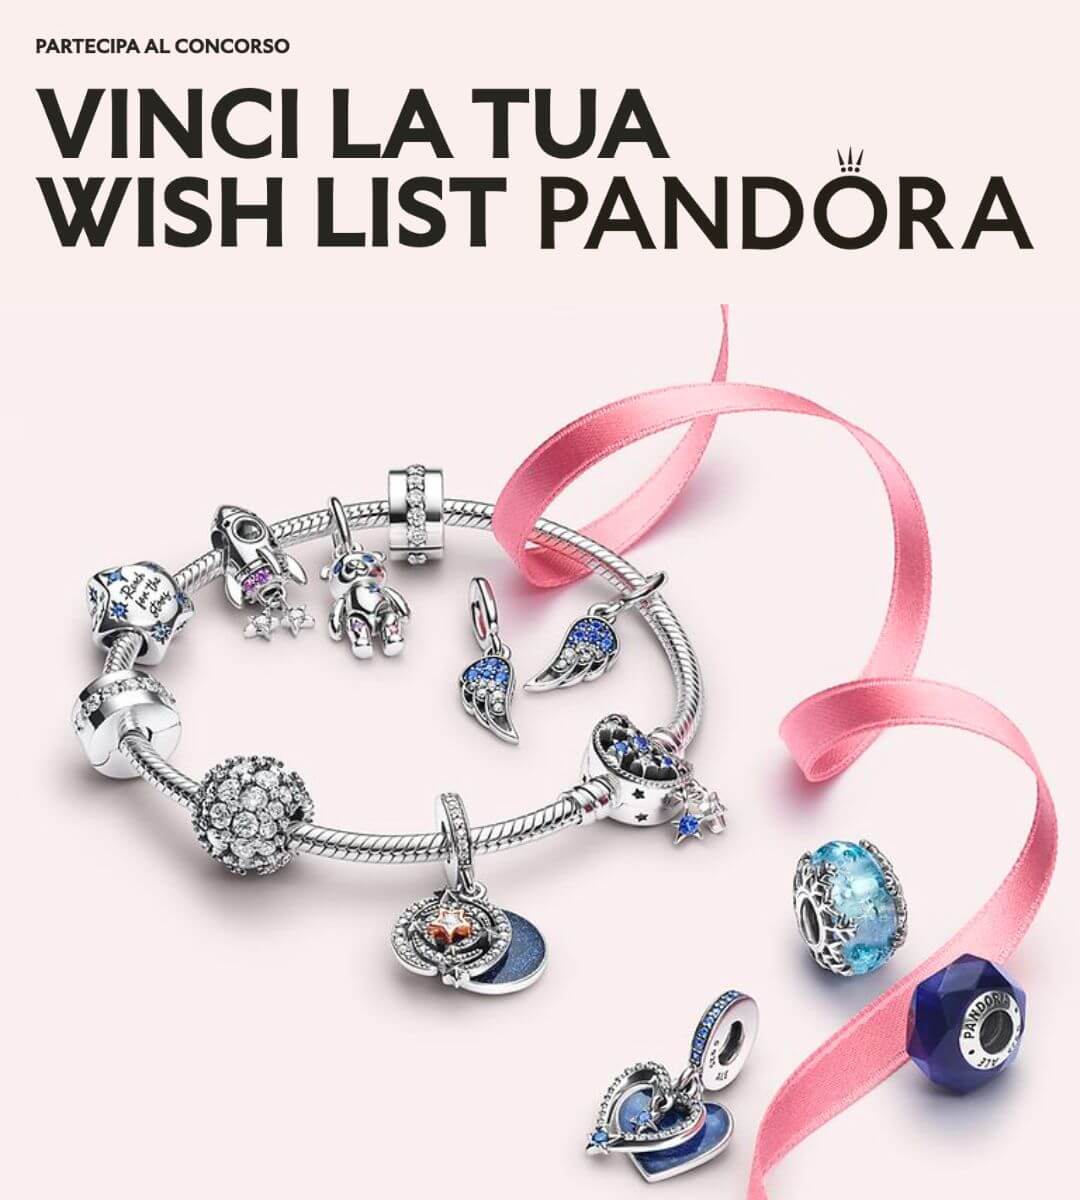 Concorso Pandora Vinci la tua Wish List 2